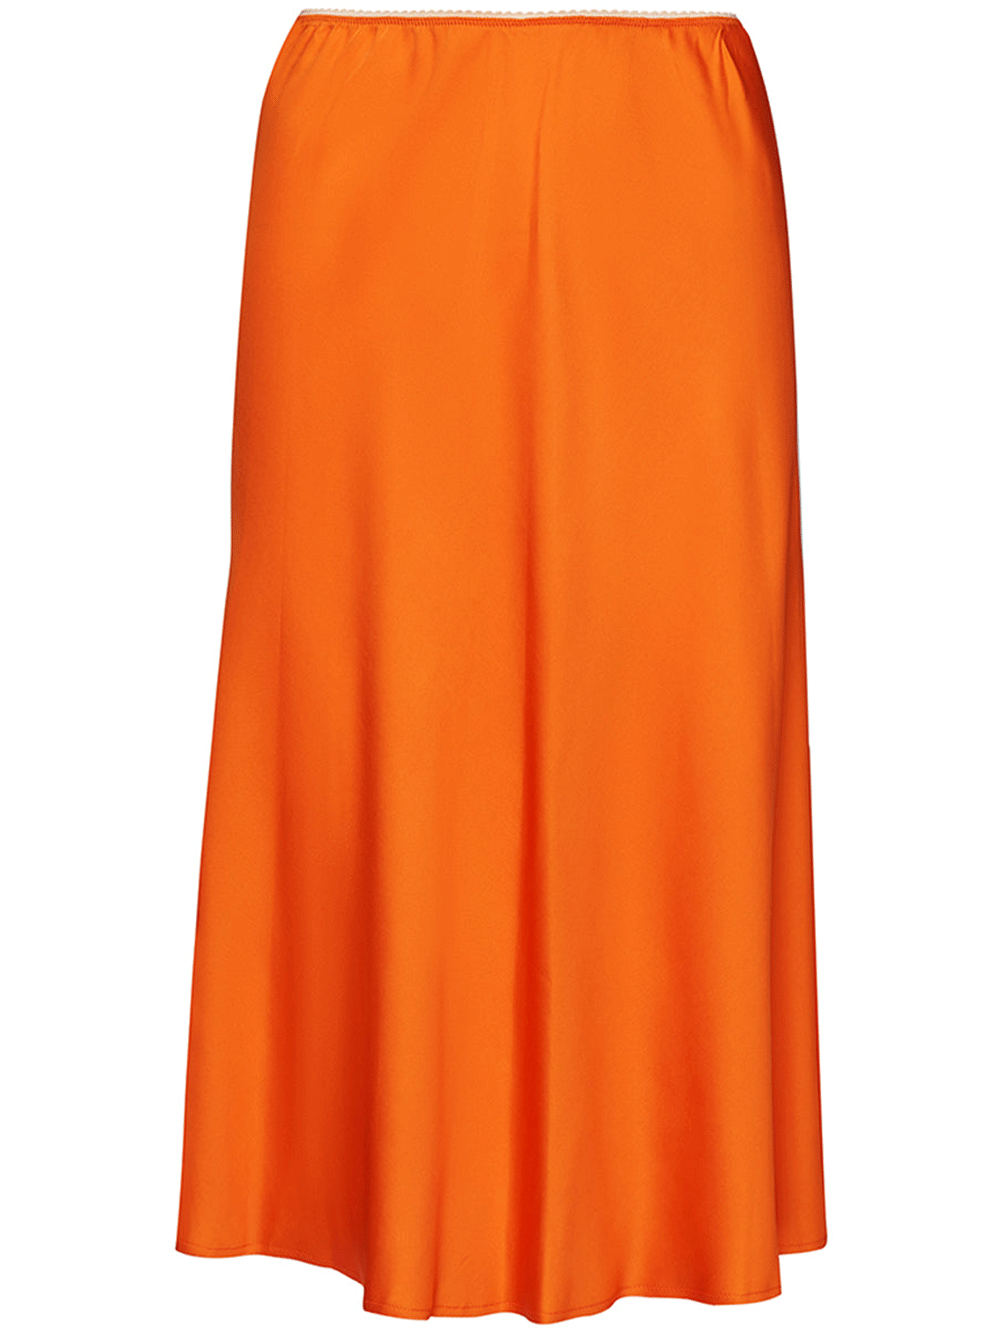 N21-Bias-Cut-Skirts-Orange-1